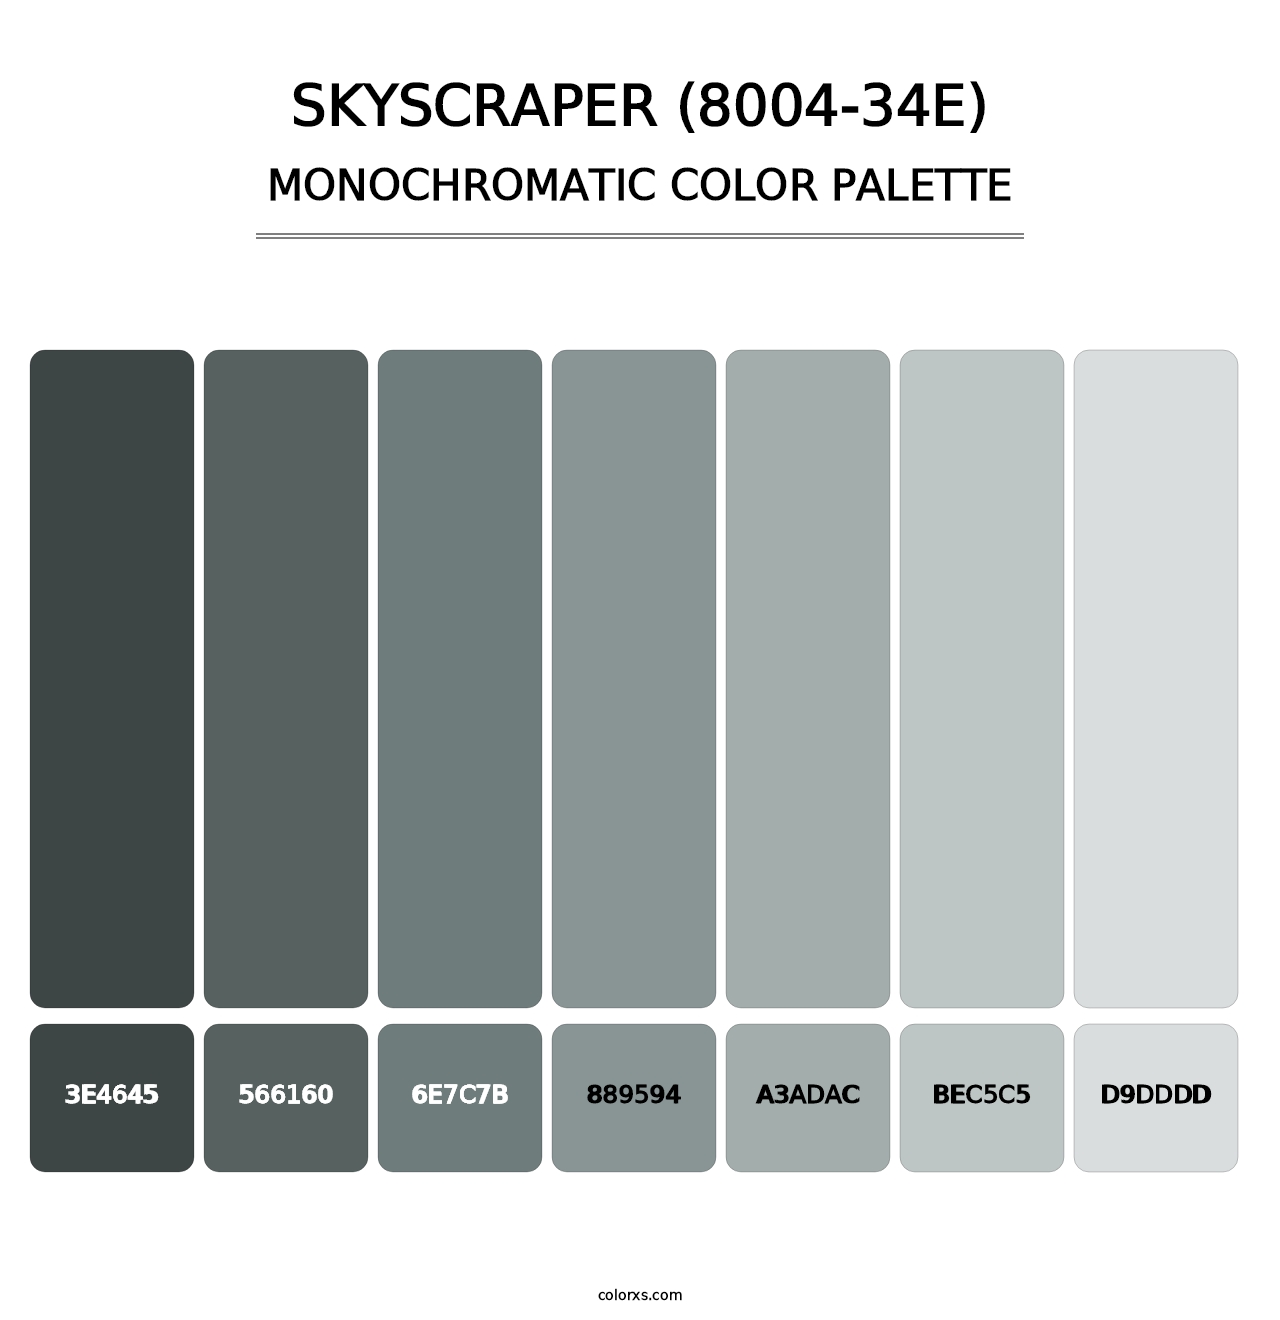 Skyscraper (8004-34E) - Monochromatic Color Palette